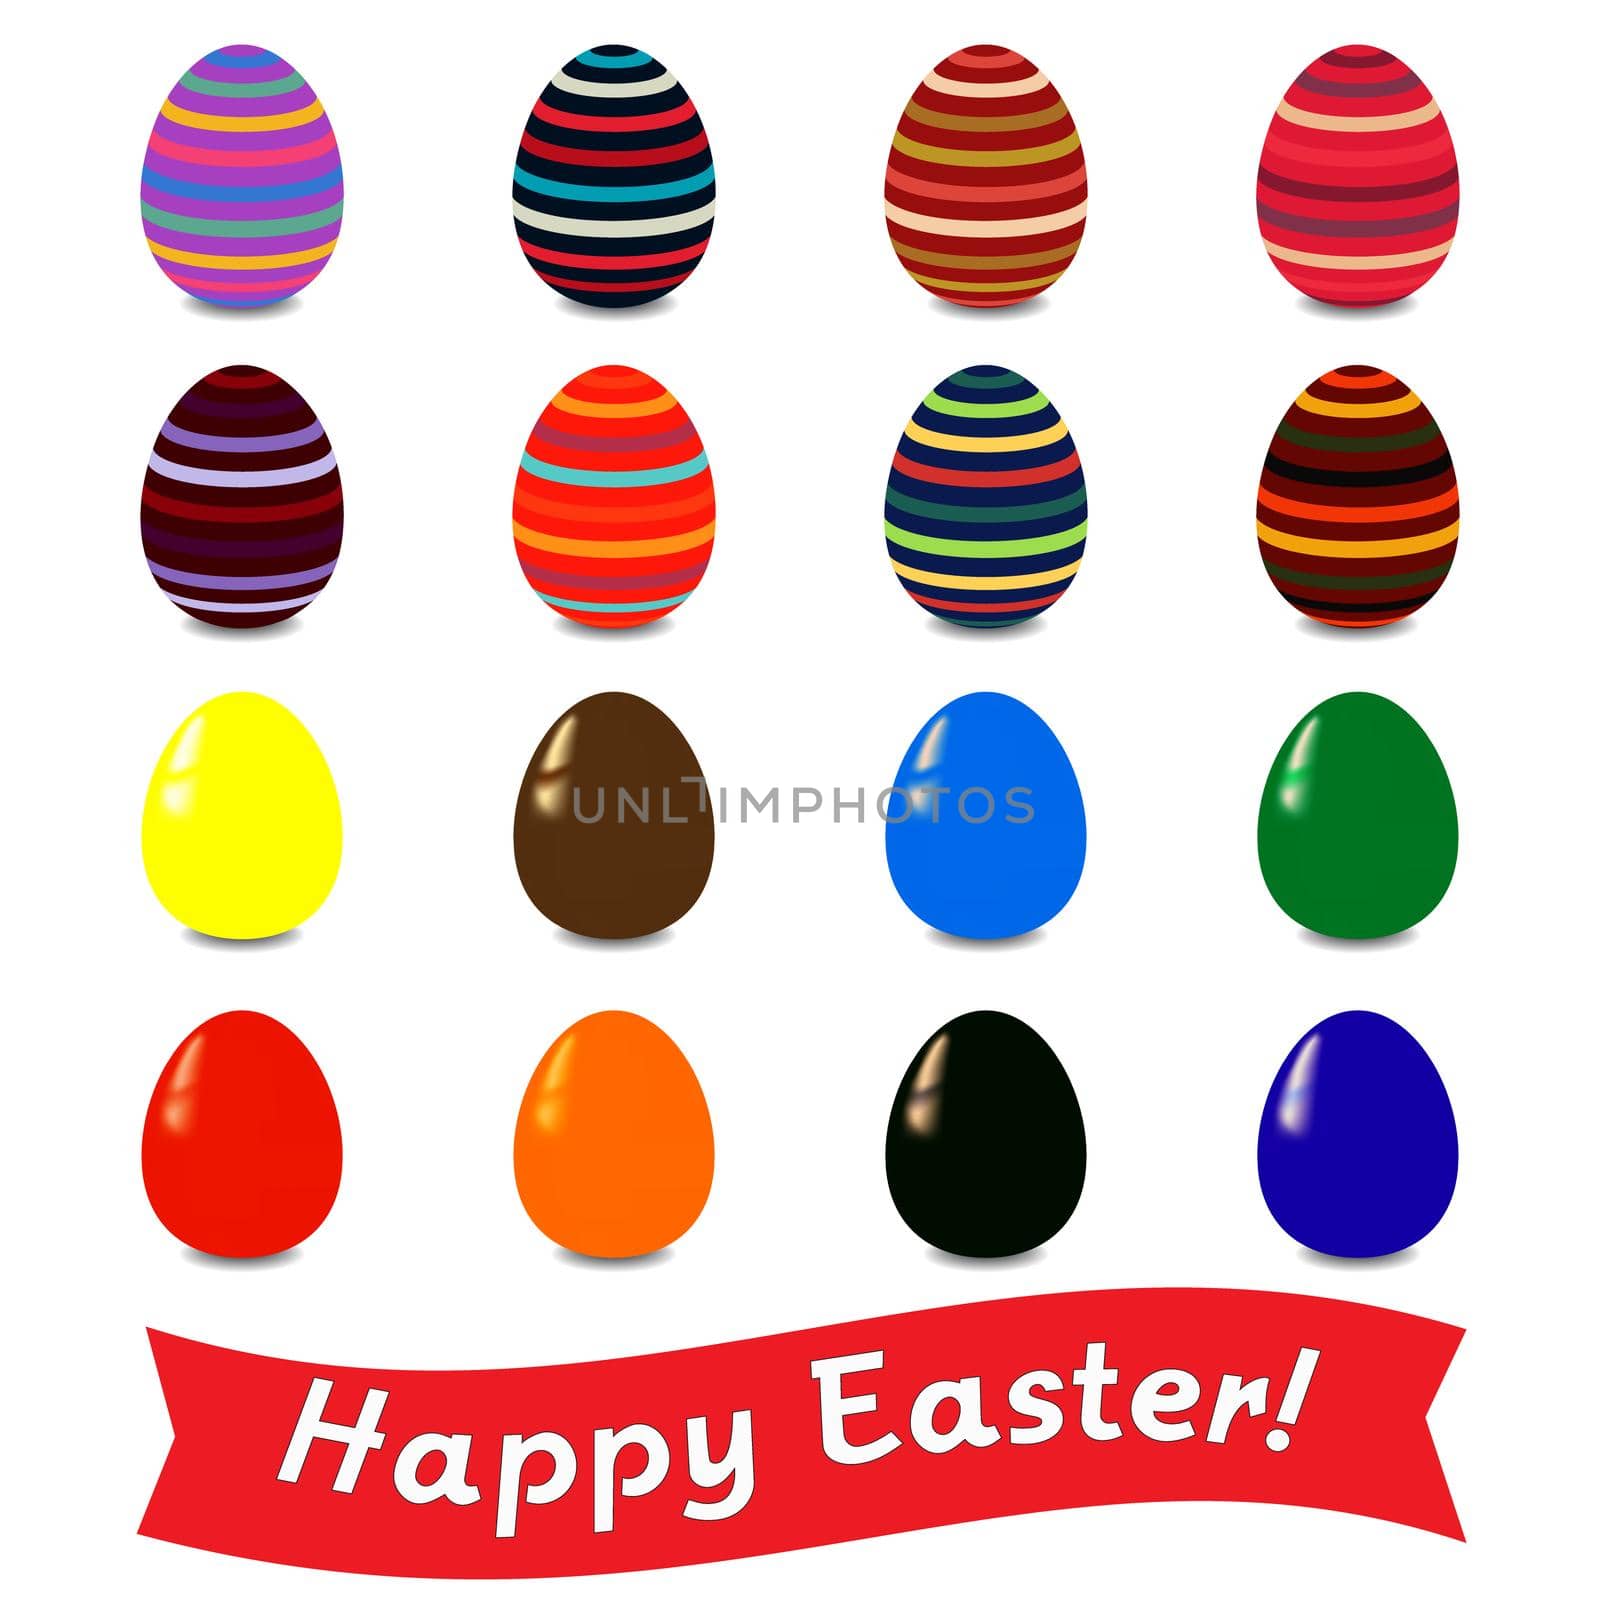 Easter eggs by Bobnevv